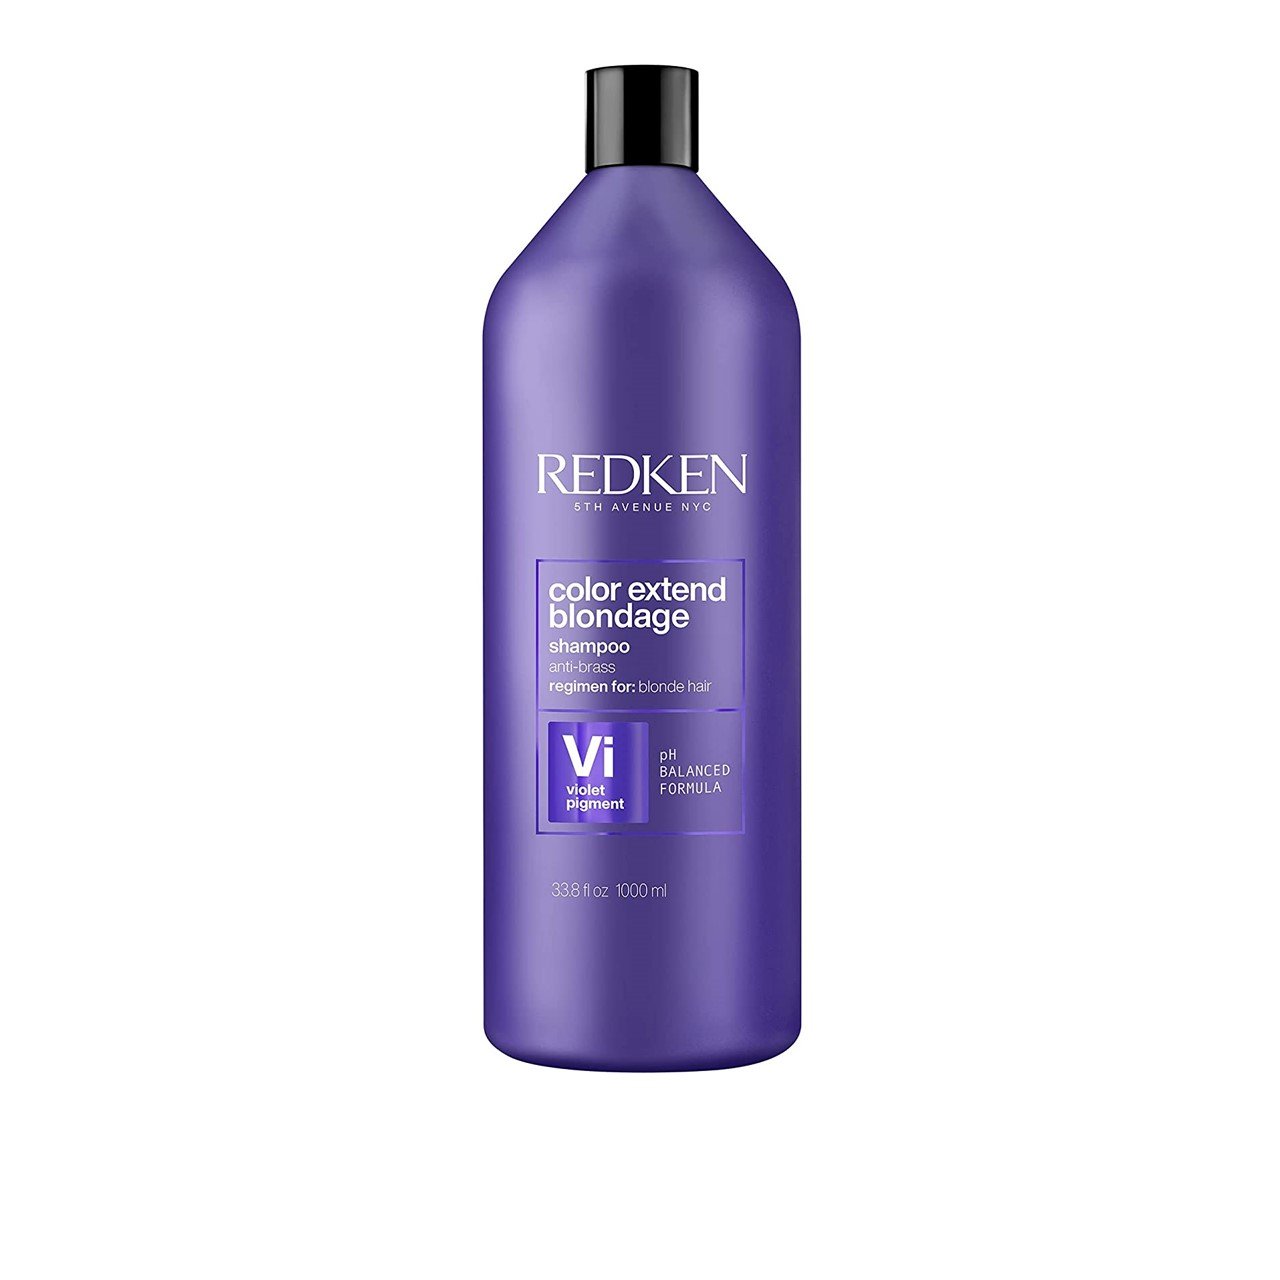 Redken Color Extend Blondage Shampoo 1L (33.81fl oz)